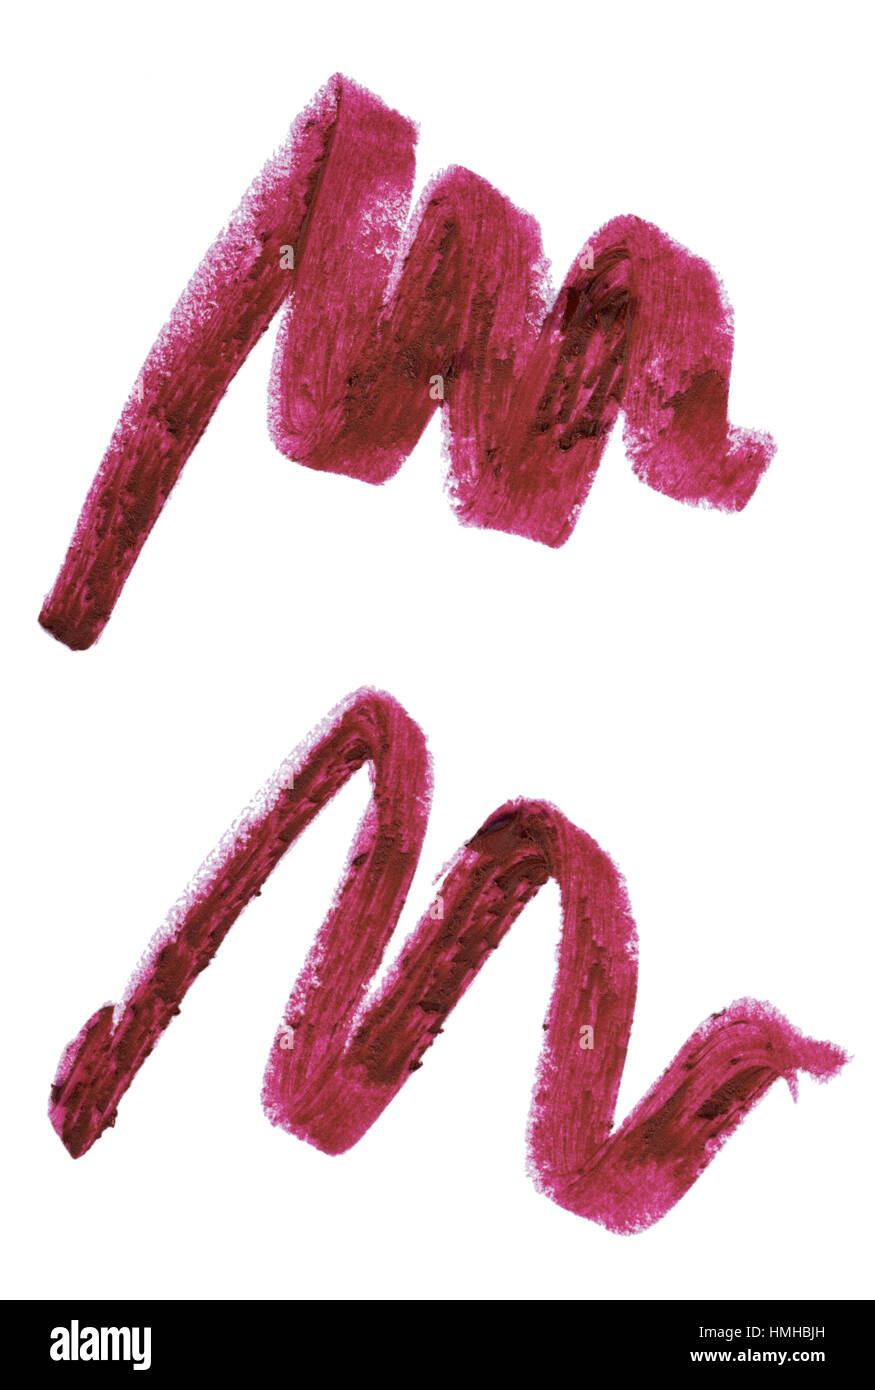 Un taglio fuori immagine di bellezza di campioni di colore rosso scuro o marrone rossiccio rossetto colorato Foto Stock